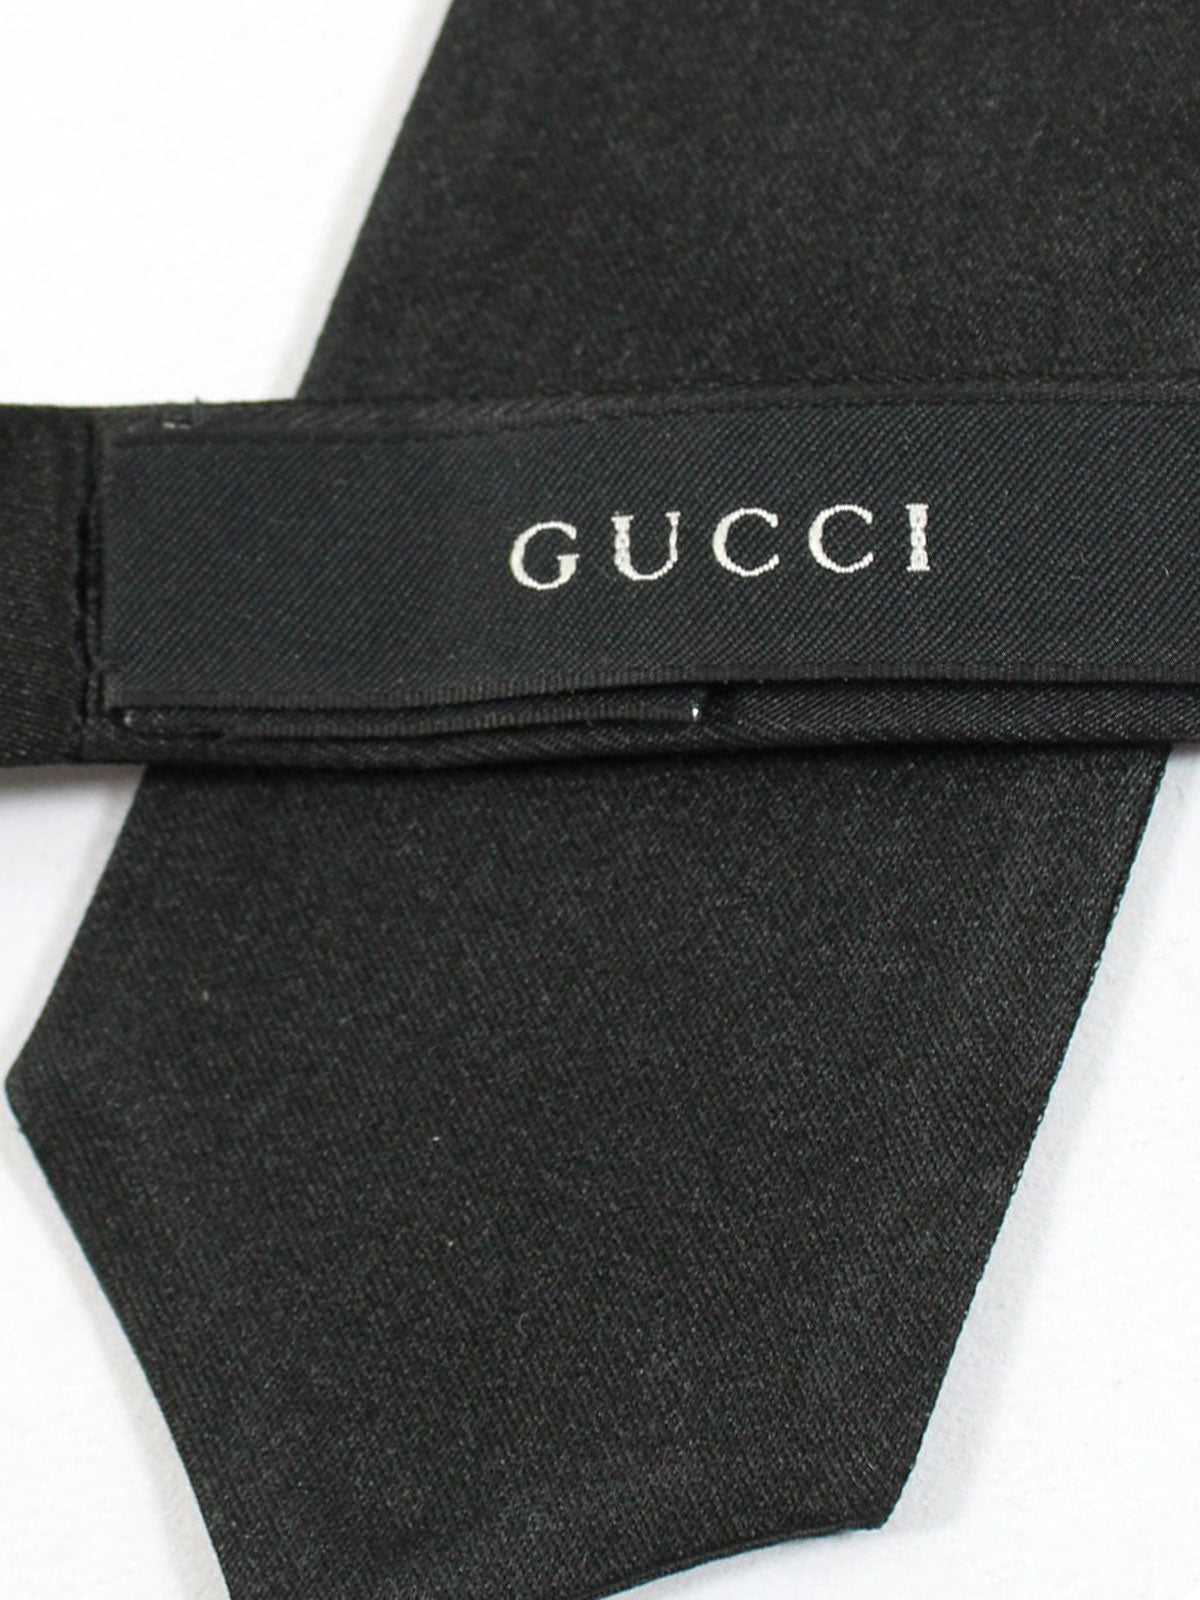 Gucci Bow Tie Black Solid Design - Diamond Point Self Tie Bow Tie - Tie  Deals